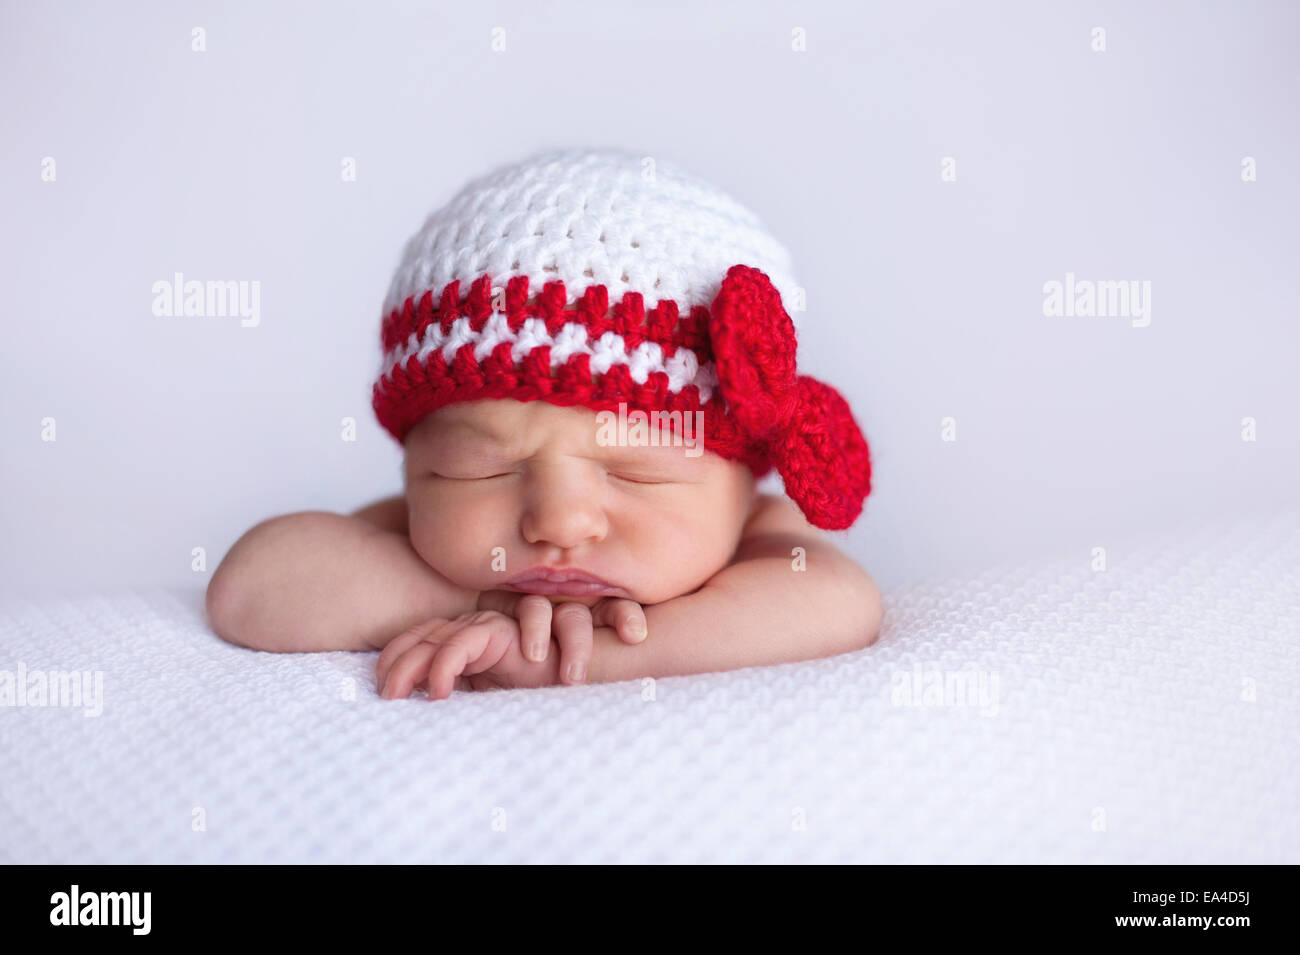 Porträt eines sieben Tage alten neugeborenen Mädchens. Sie trägt eine weiße und rote gehäkelte Mütze und schläft auf weißen, strukturierten m Stockfoto